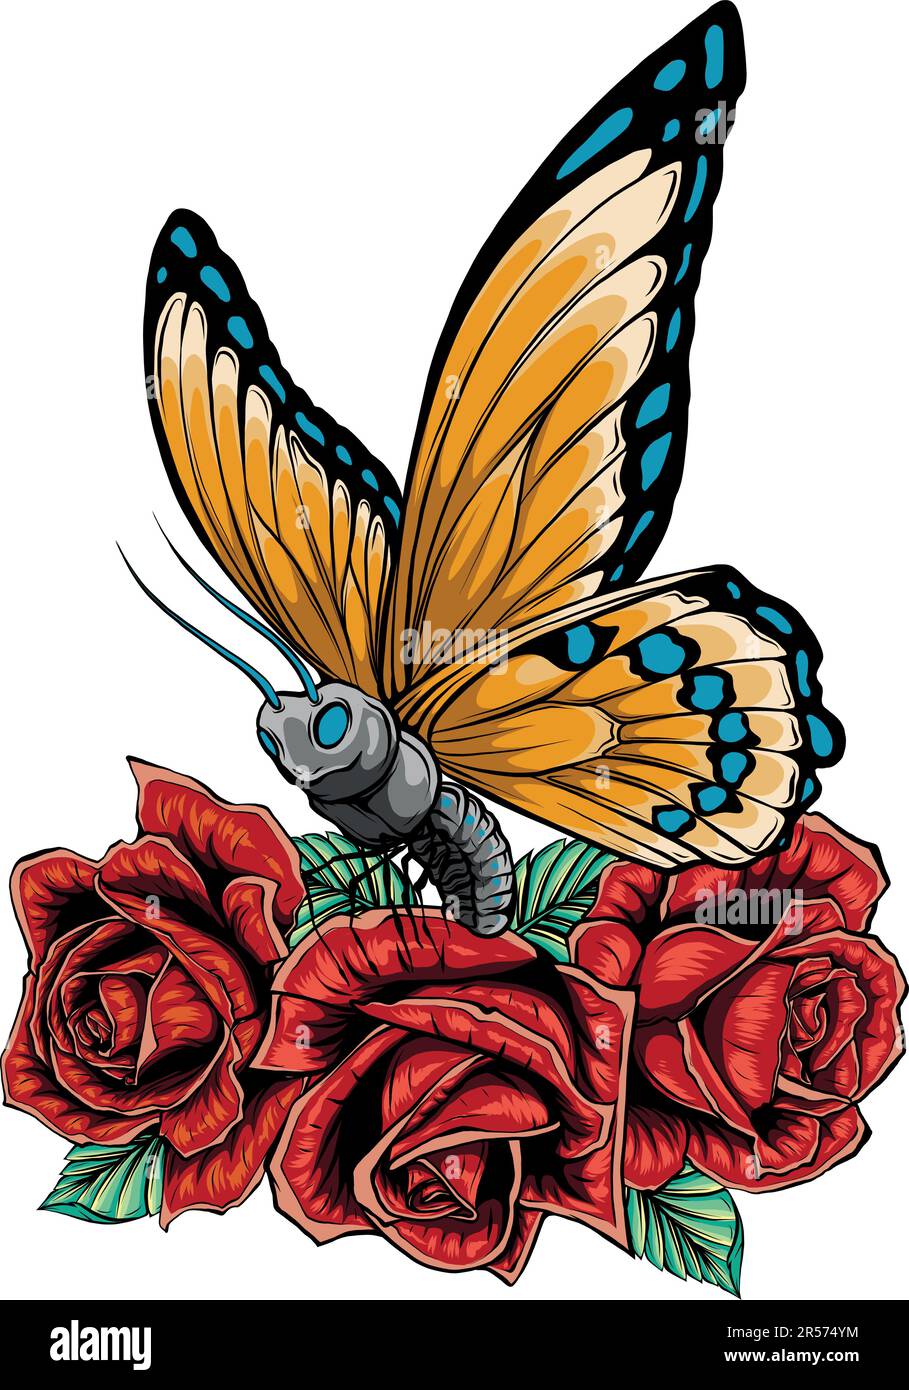 Illustrazione vettoriale di farfalle e rose su sfondo bianco Illustrazione Vettoriale